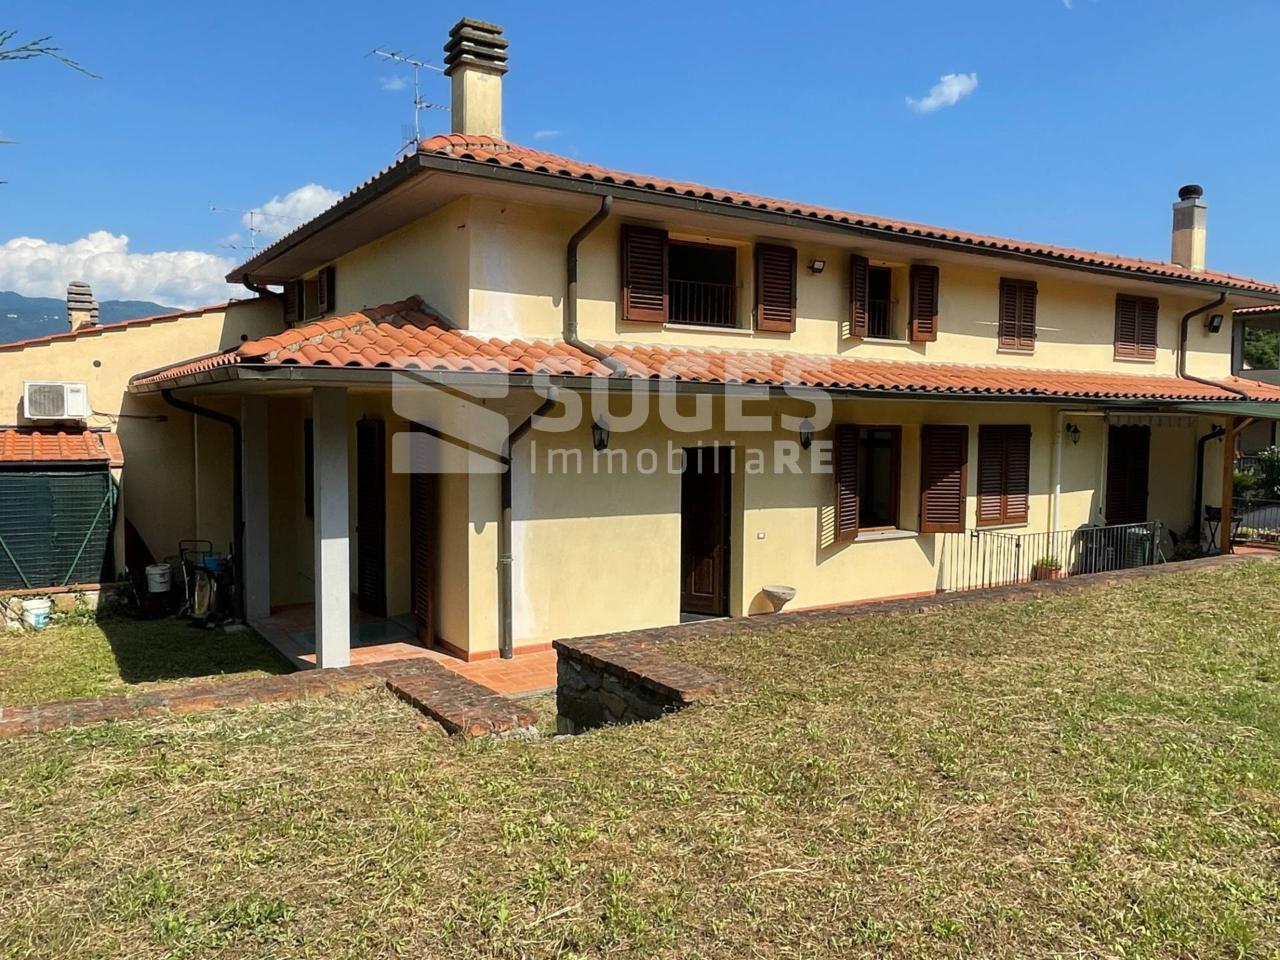 Villa a schiera in vendita a Rignano Sull'Arno